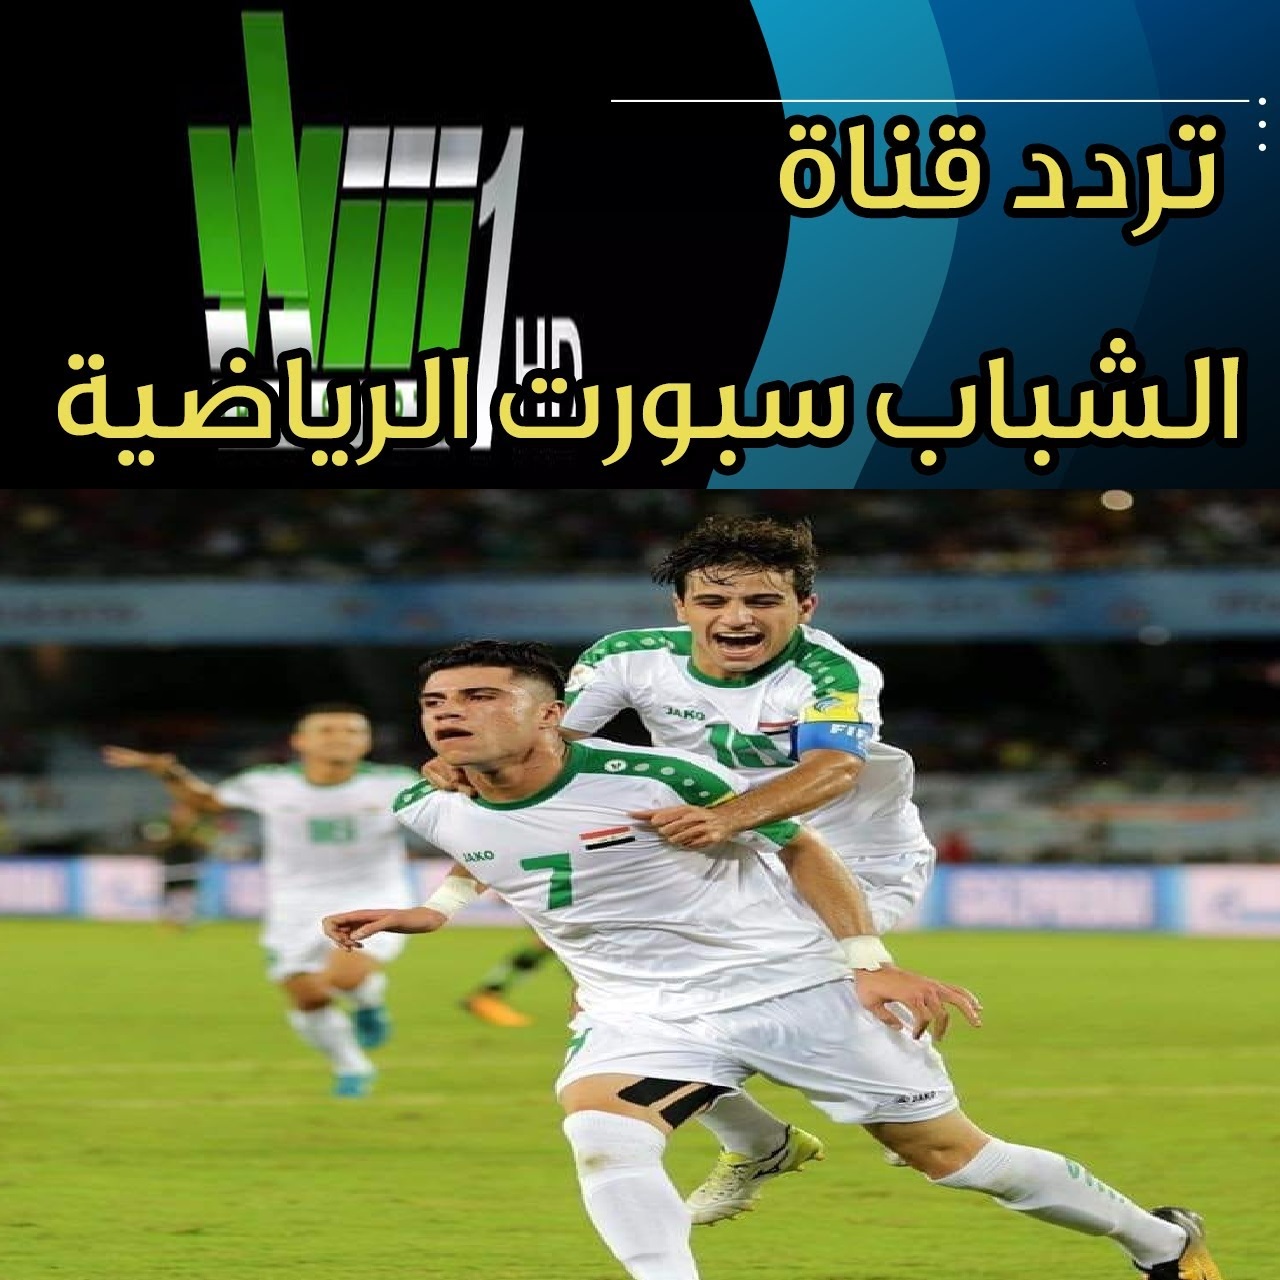 تردد قناة الشباب سبورت الرياضية Al Shabab Sport HD العراقية المجانية ومباراة العرق وايران